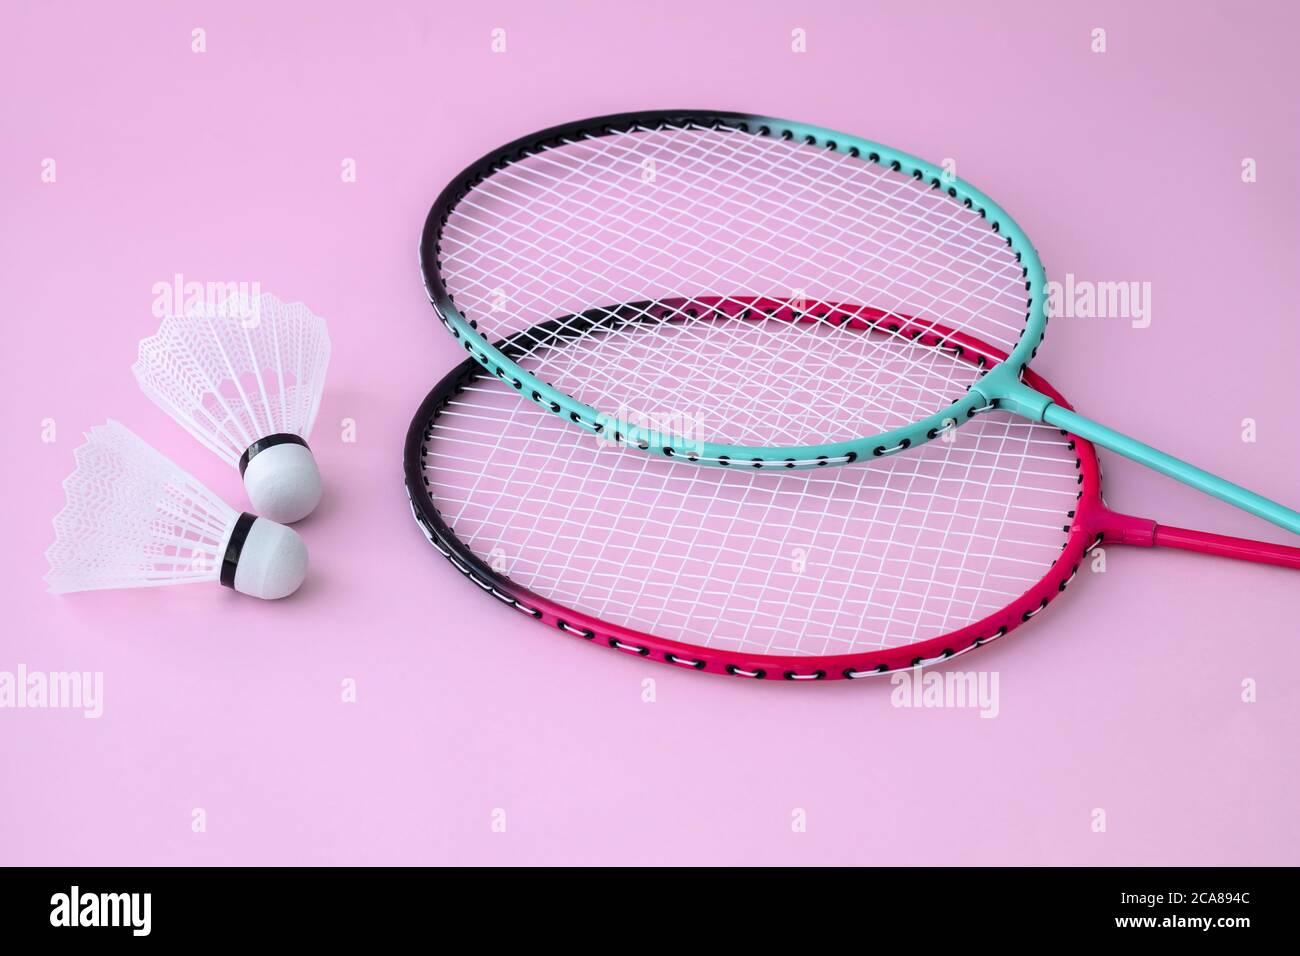 Zwei Badminton Schläger und Federball auf rosa Hintergrund. Flach liegend, Freizeitausrüstung. Sportspiel-Konzept Stockfoto